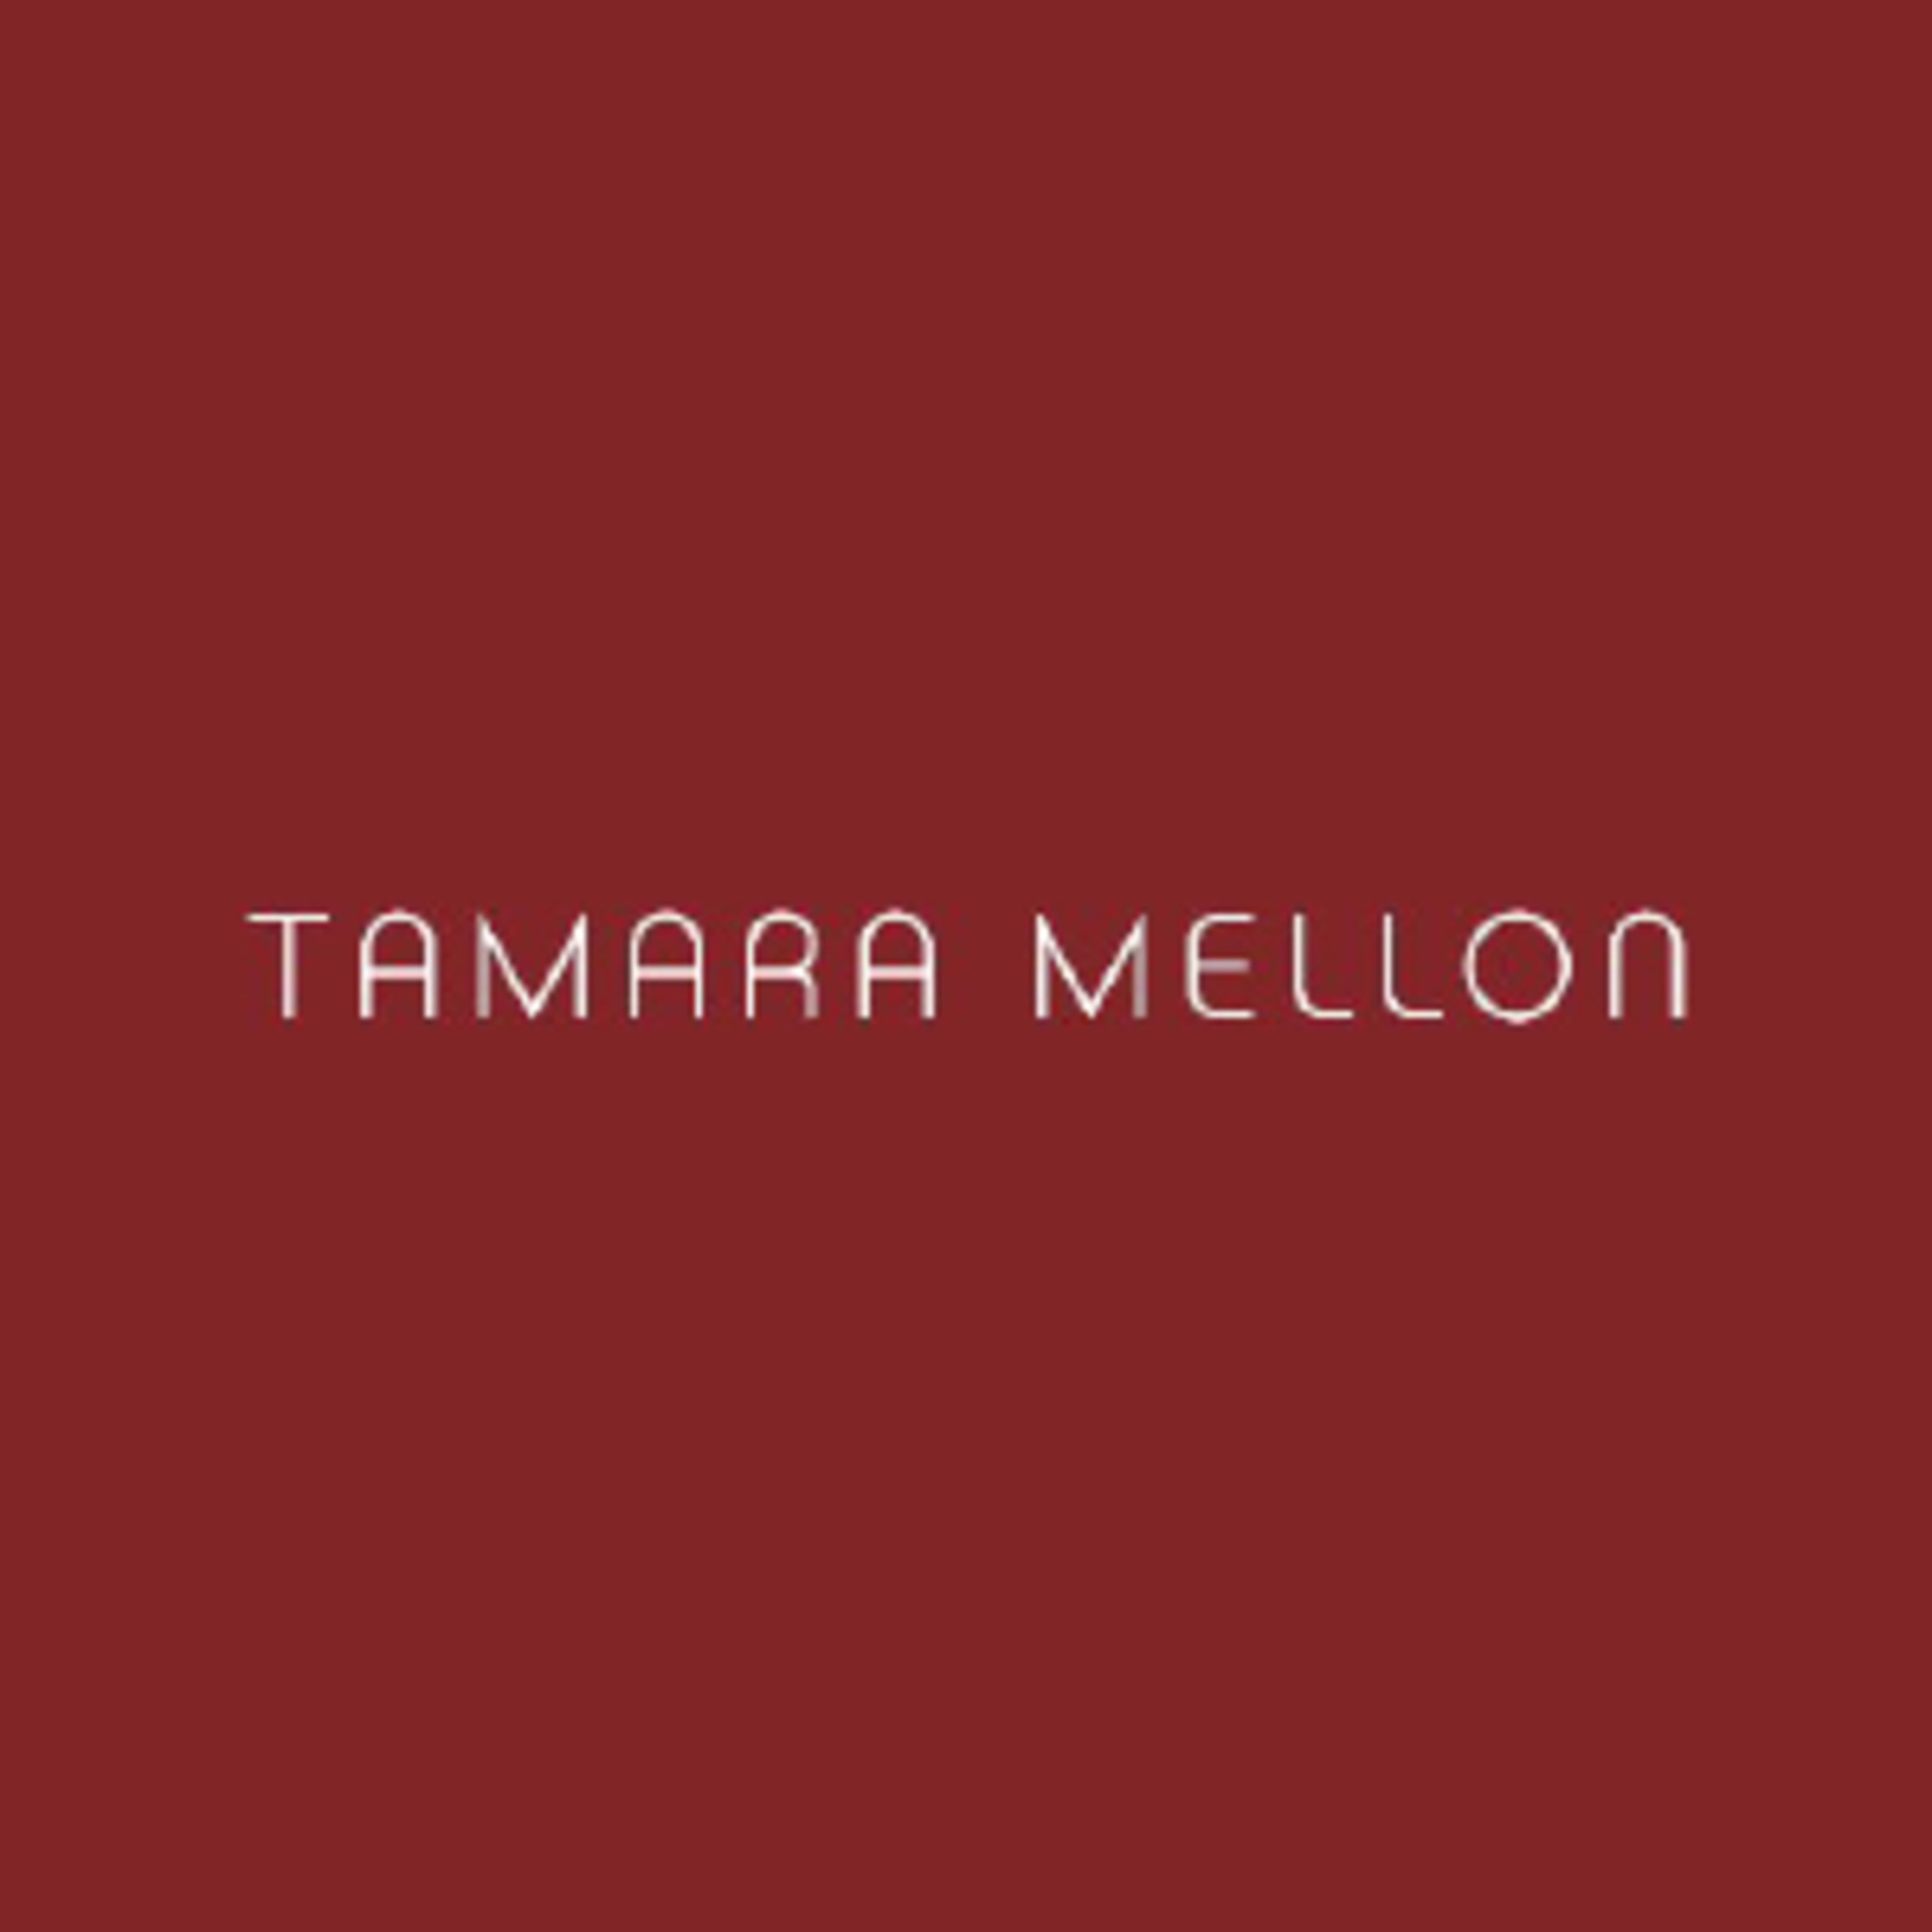 Tamara Mellon Code